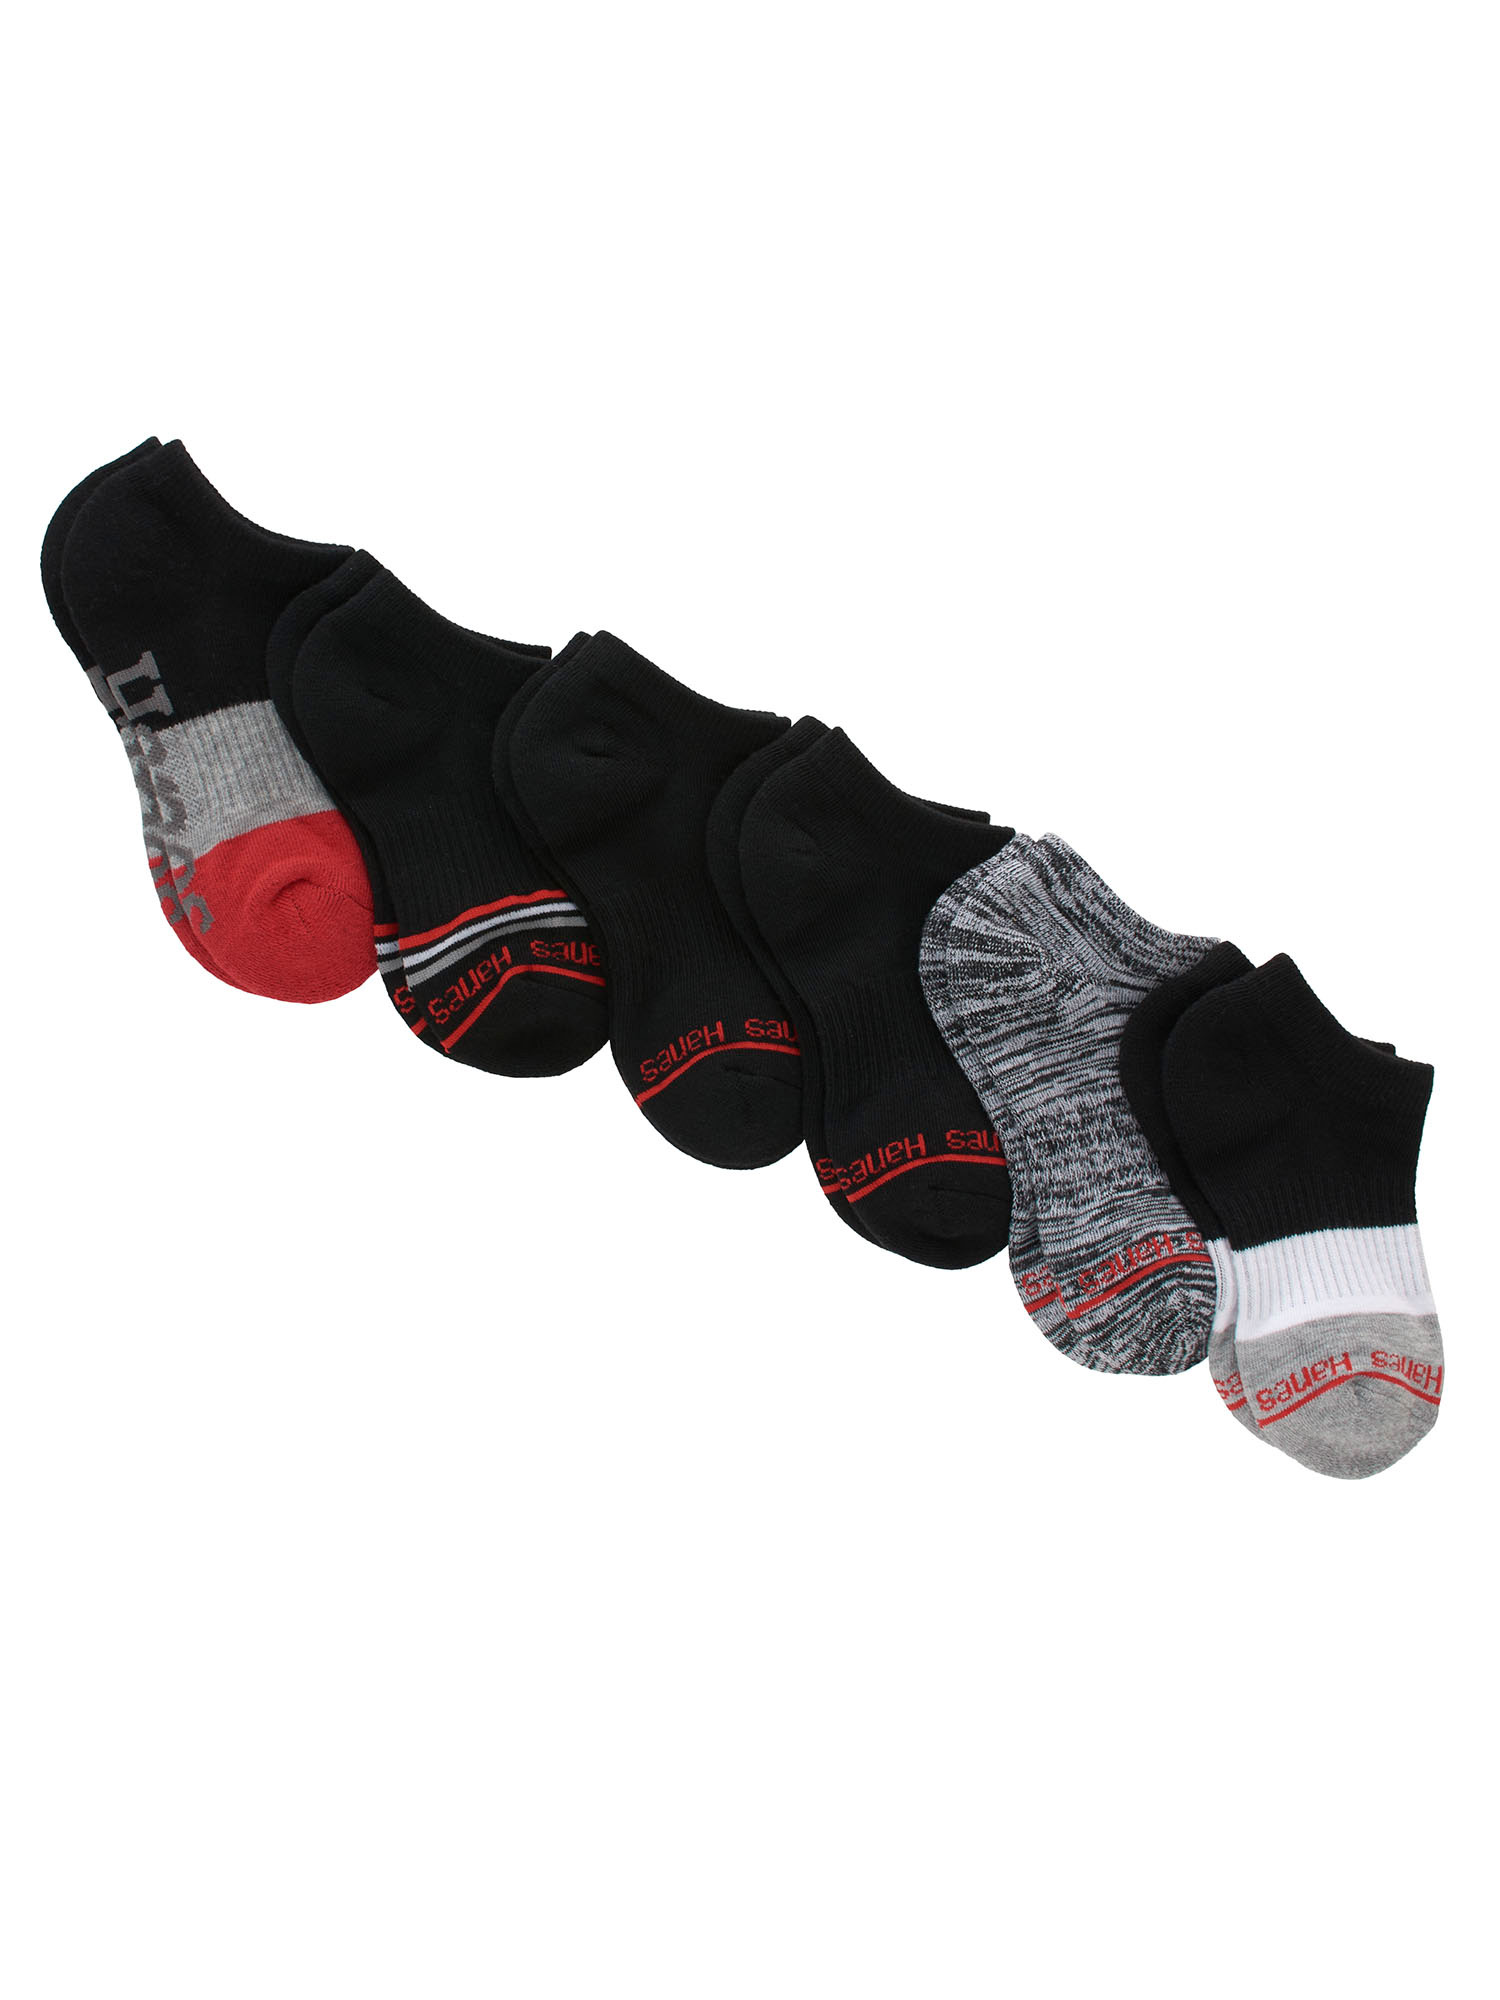 Hanes Originals Boys' No-Show Socks, 6-Pack, Sizes S-L